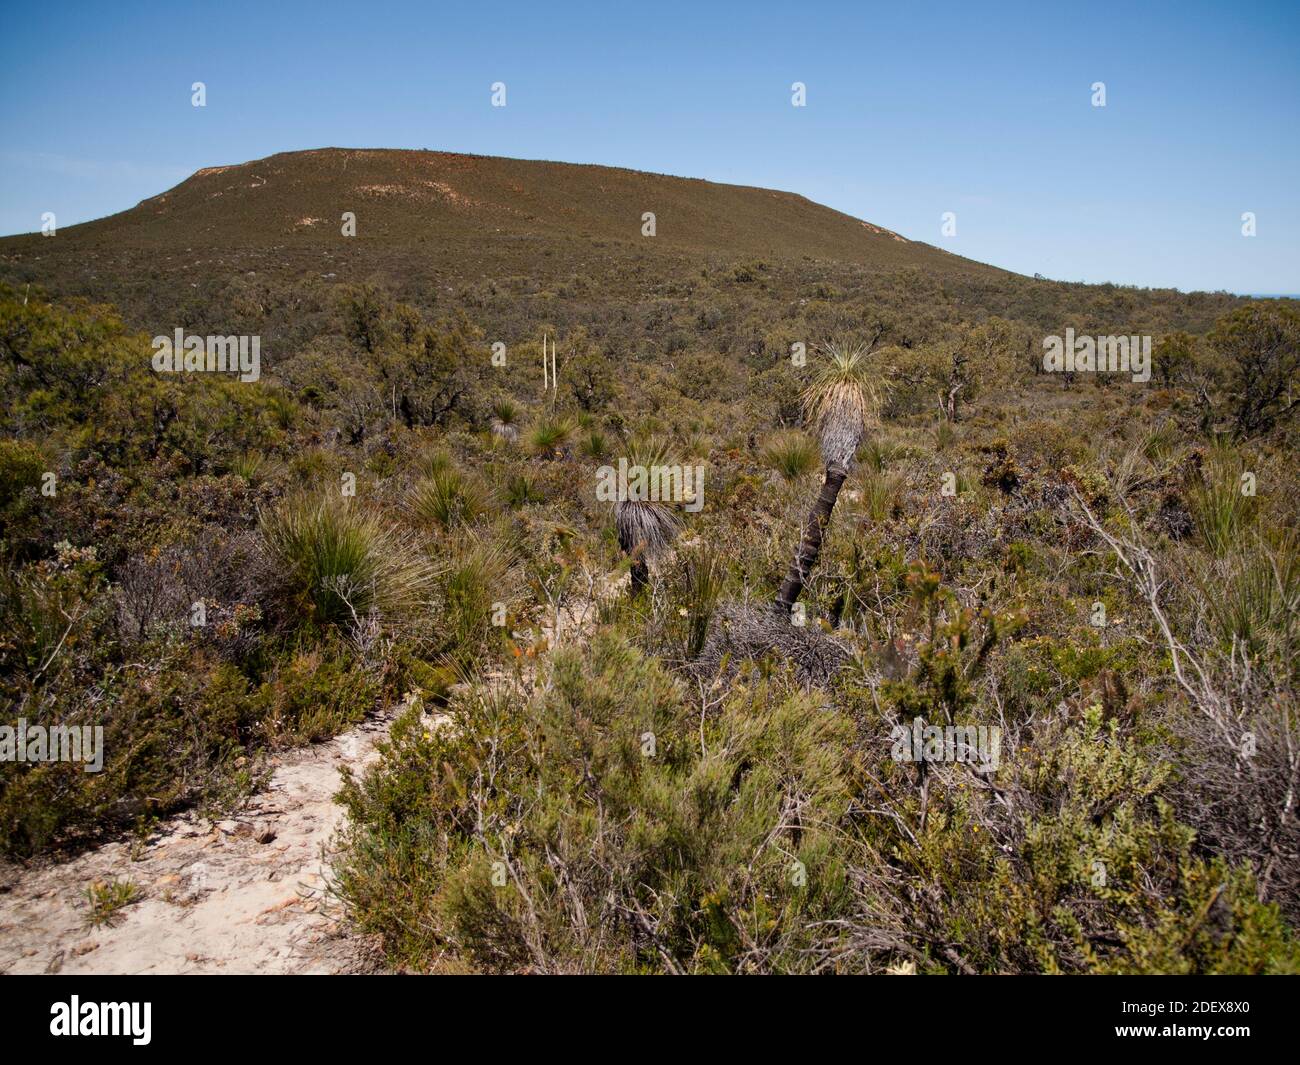 Le Mont Lesueur (313 m) est le point le plus élevé du Parc National de Lesueur, un méca botanique et un hotspot de biodiversité, la Côte Turquoise, Australie occidentale Banque D'Images